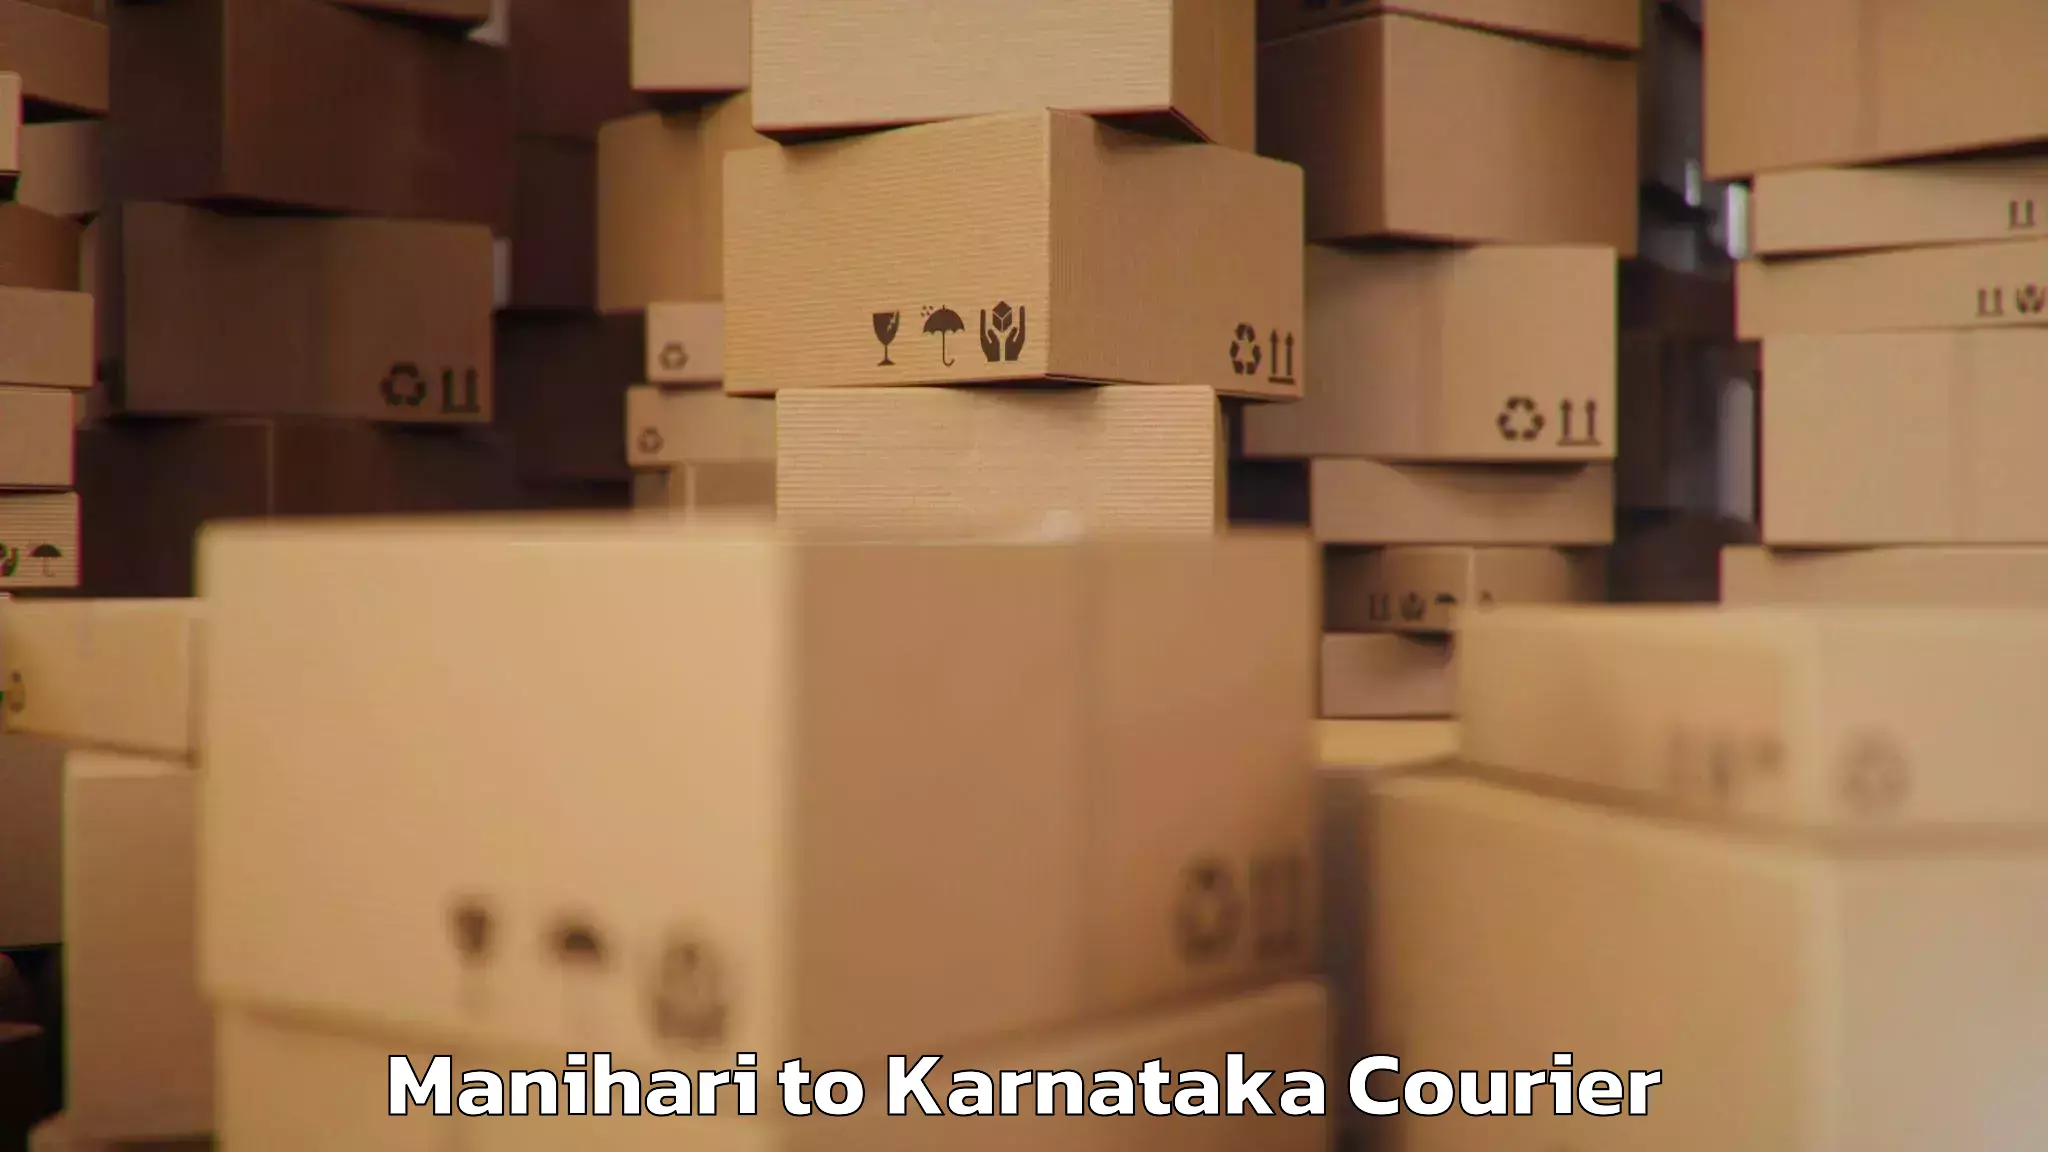 Baggage shipping quotes Manihari to Karnataka